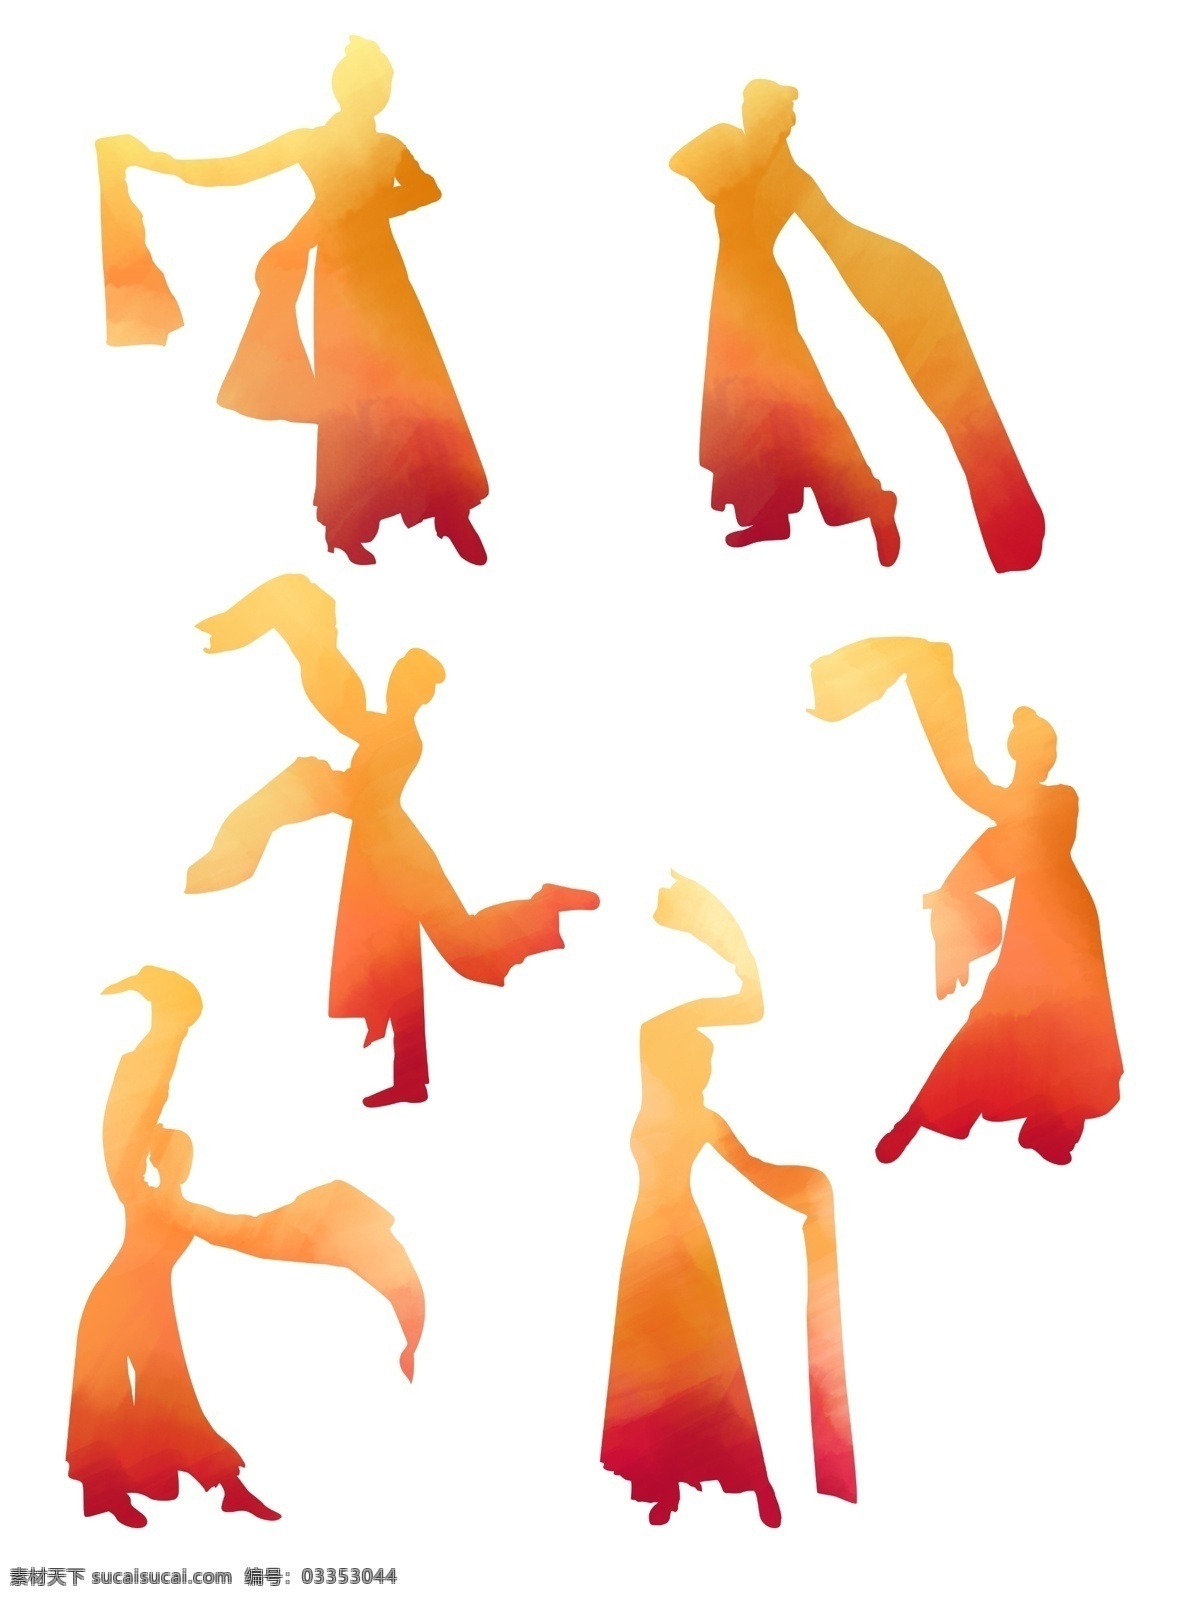 手绘 水彩 黄 橙 叠加 水袖 舞 舞者 人物 舞蹈 元素 人物元素 舞蹈剪影 人物剪影 水袖舞动作 水彩人物